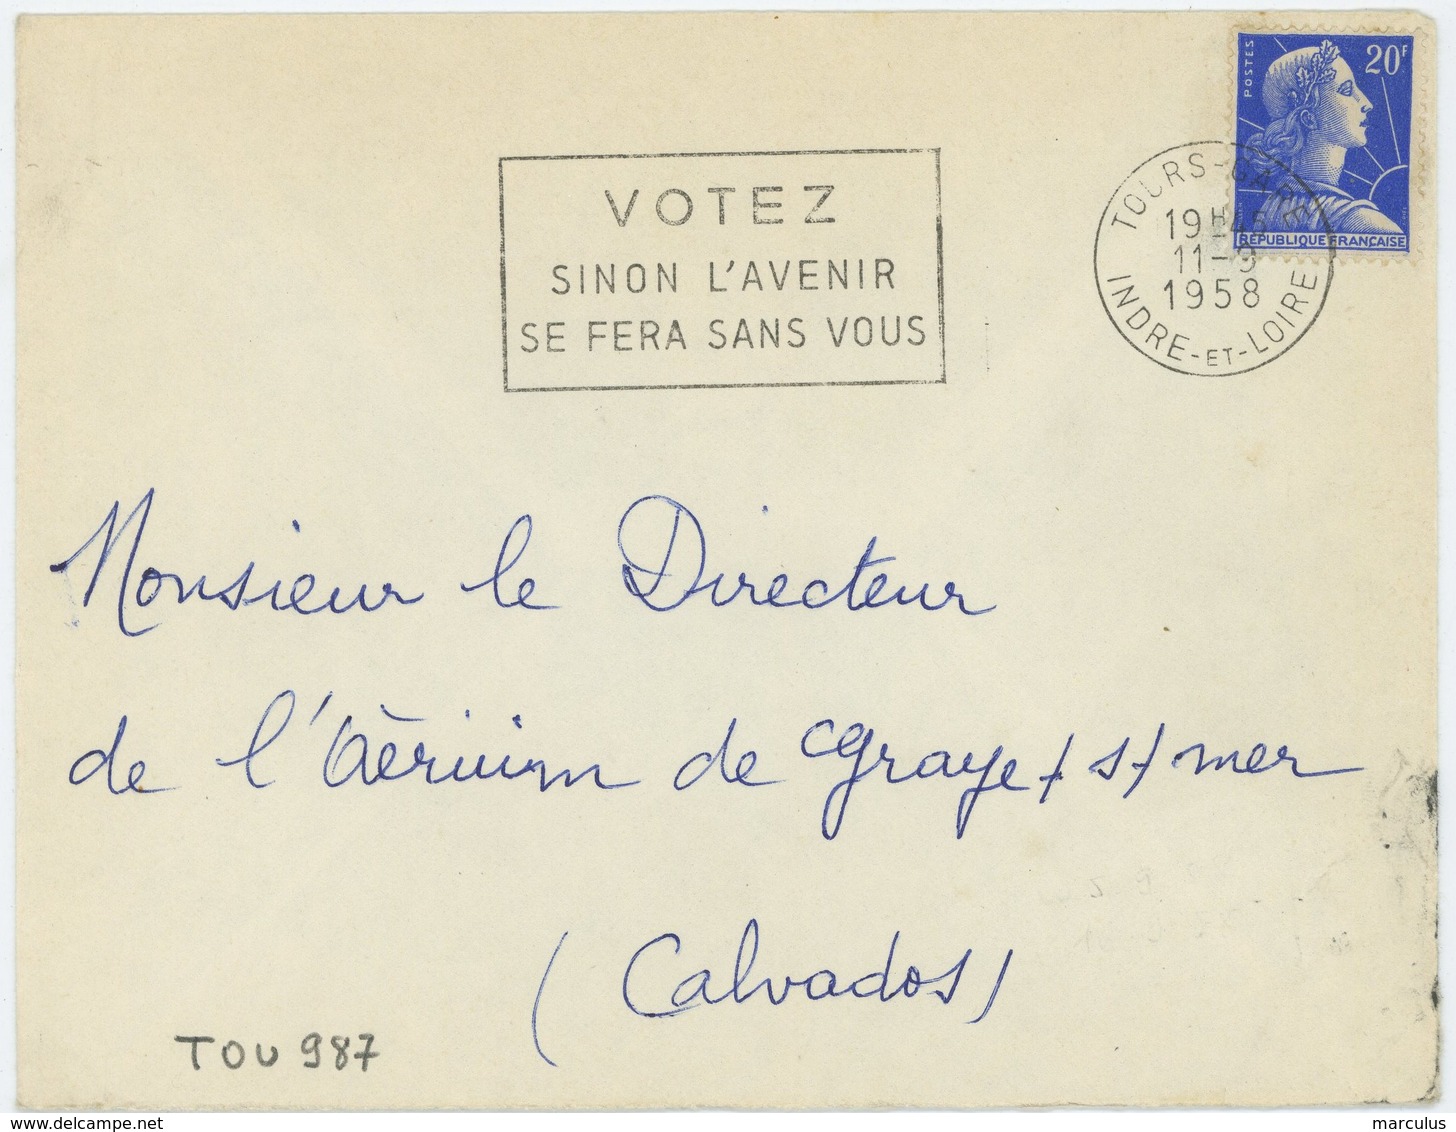 TOURS - GARE  INDRE-ET-LOIRE 1958 : VOTEZ SINON L'AVENIR... - Oblitérations Mécaniques (flammes)